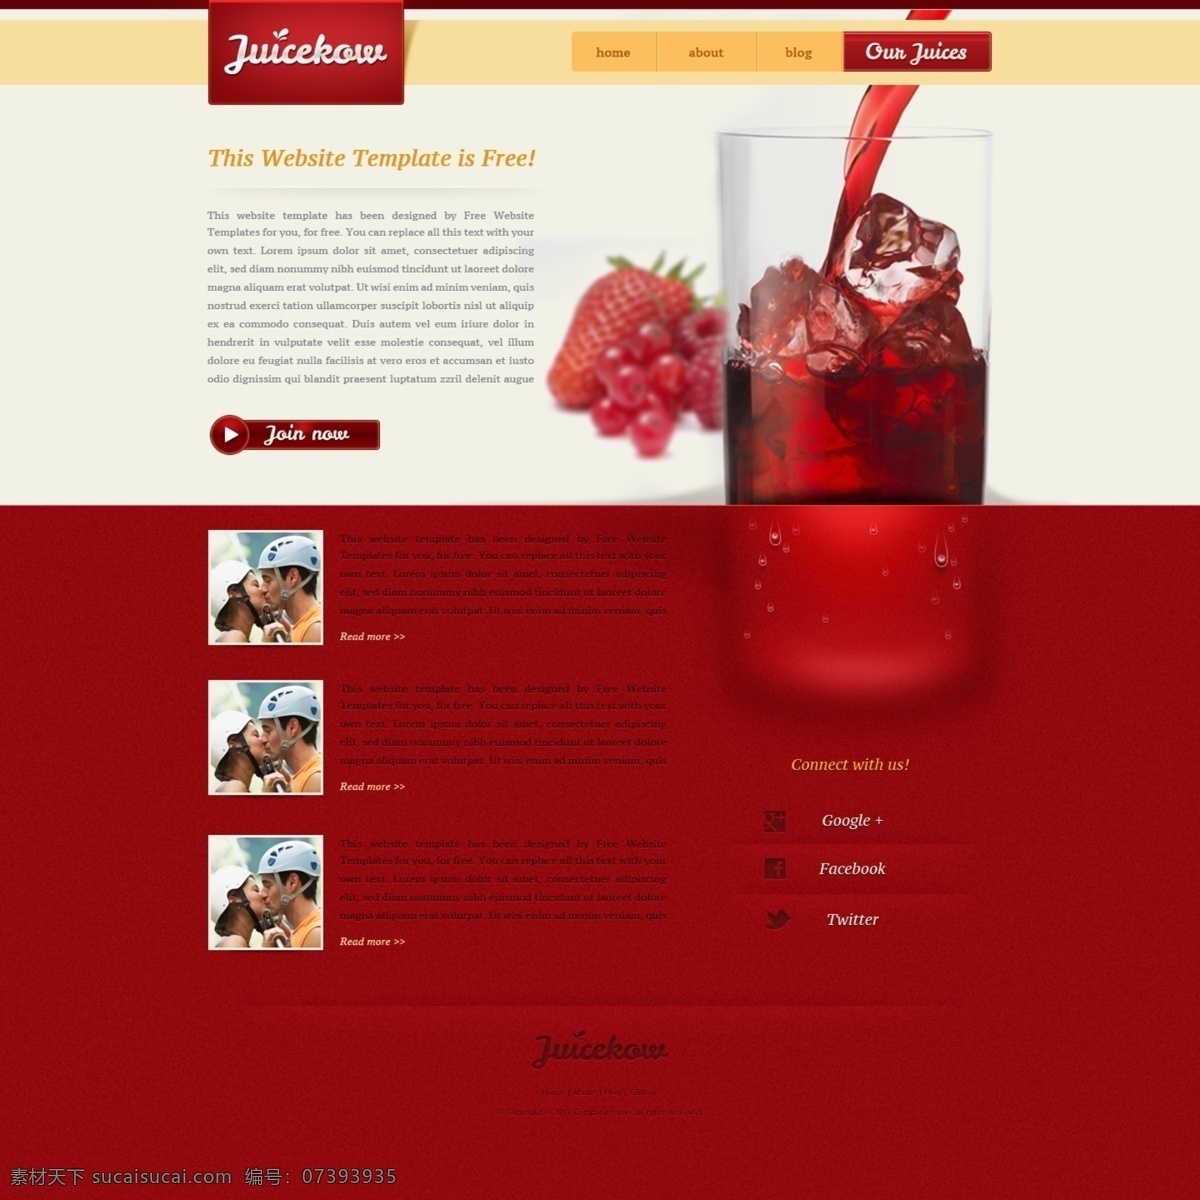 优雅 喝 网站 模板 psd素材 材料 网页 元素 文件 喝的 优雅的 网页素材 网页界面设计